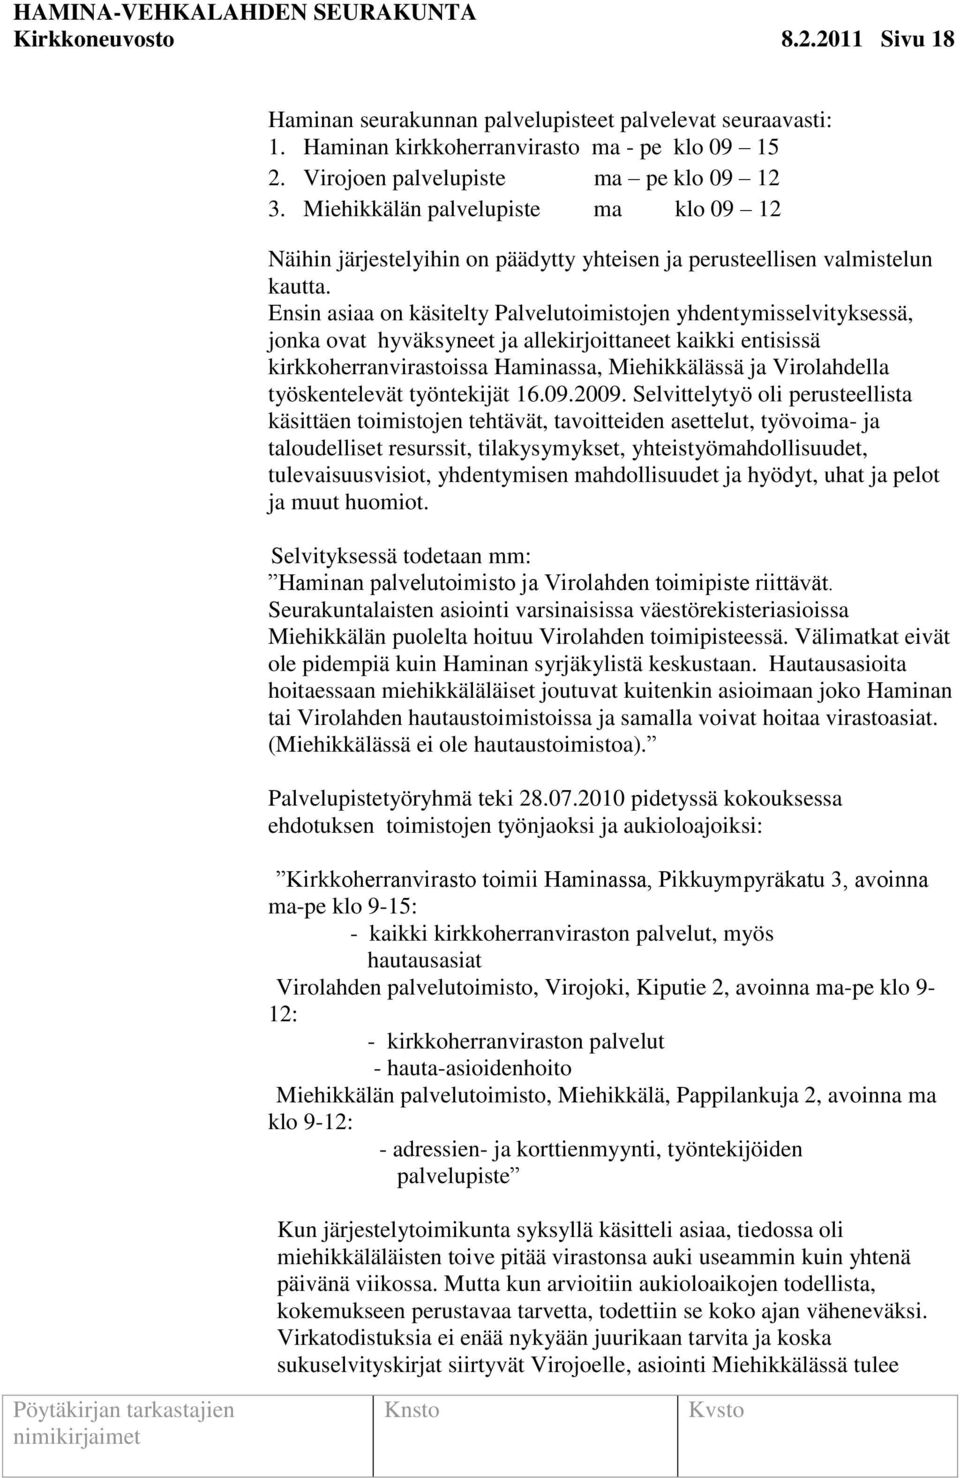 Ensin asiaa on käsitelty Palvelutoimistojen yhdentymisselvityksessä, jonka ovat hyväksyneet ja allekirjoittaneet kaikki entisissä kirkkoherranvirastoissa Haminassa, Miehikkälässä ja Virolahdella